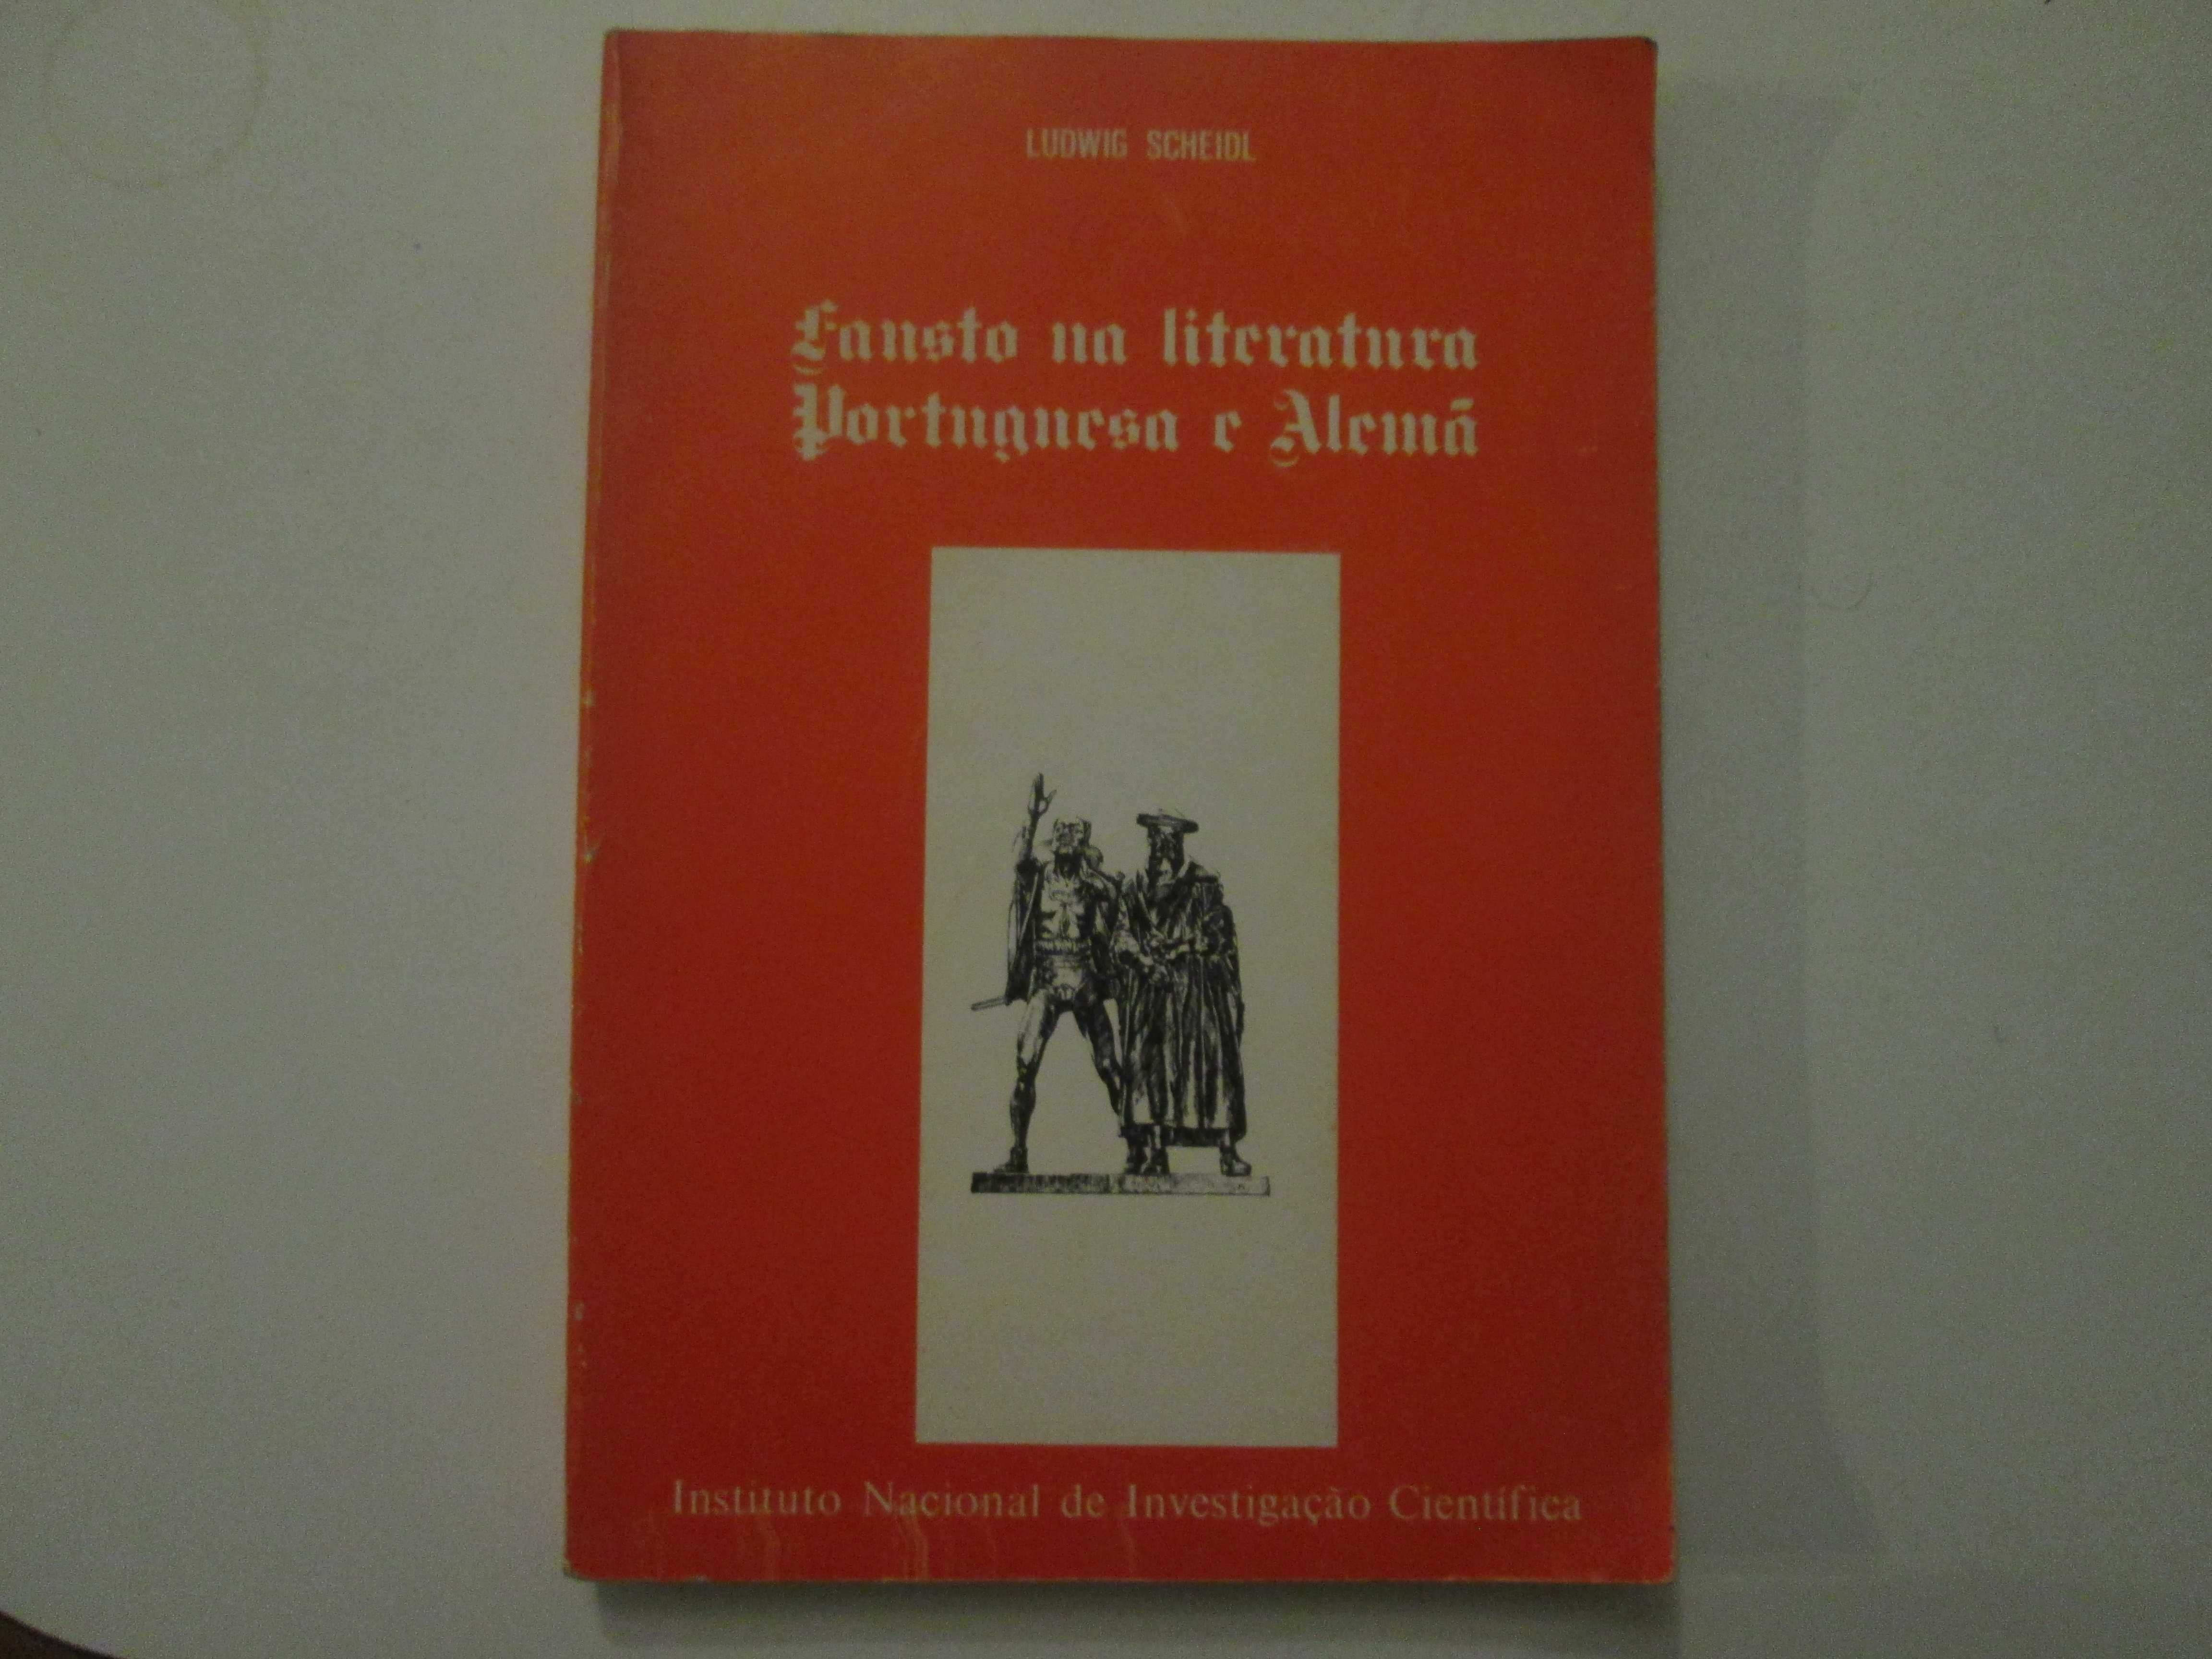 Fausto na literatura portuguesa e alemã- Ludwig Scheidl